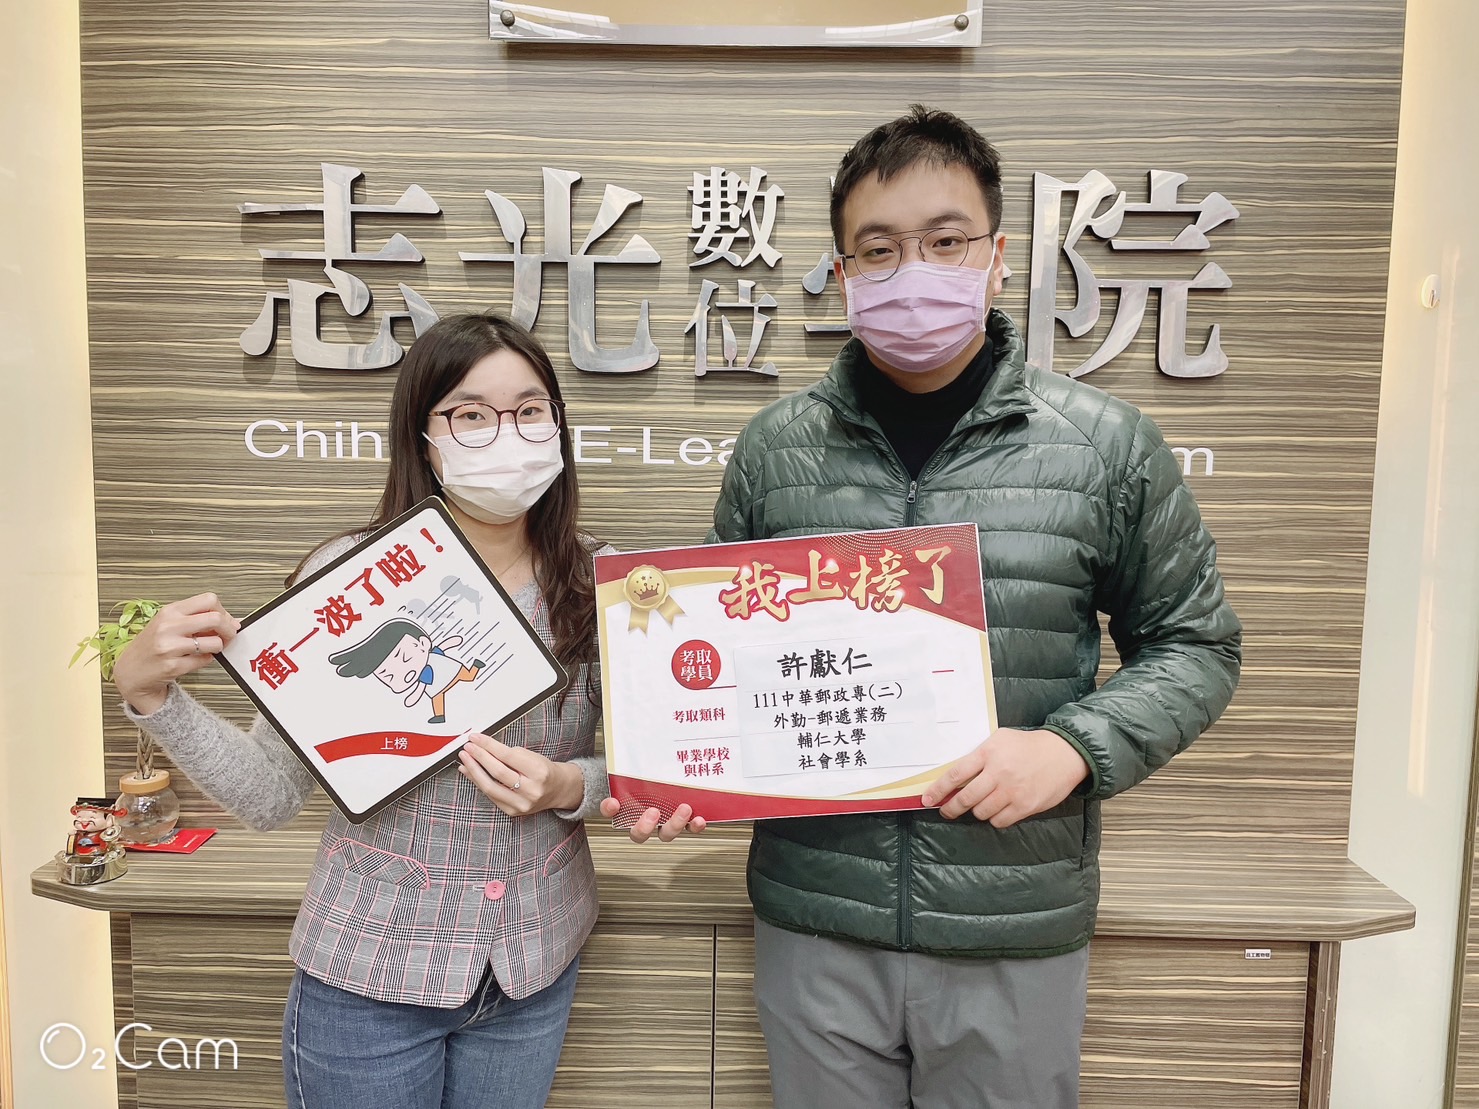 111中華郵政-櫃台業務正取-許O仁-溪湖志光數位學院